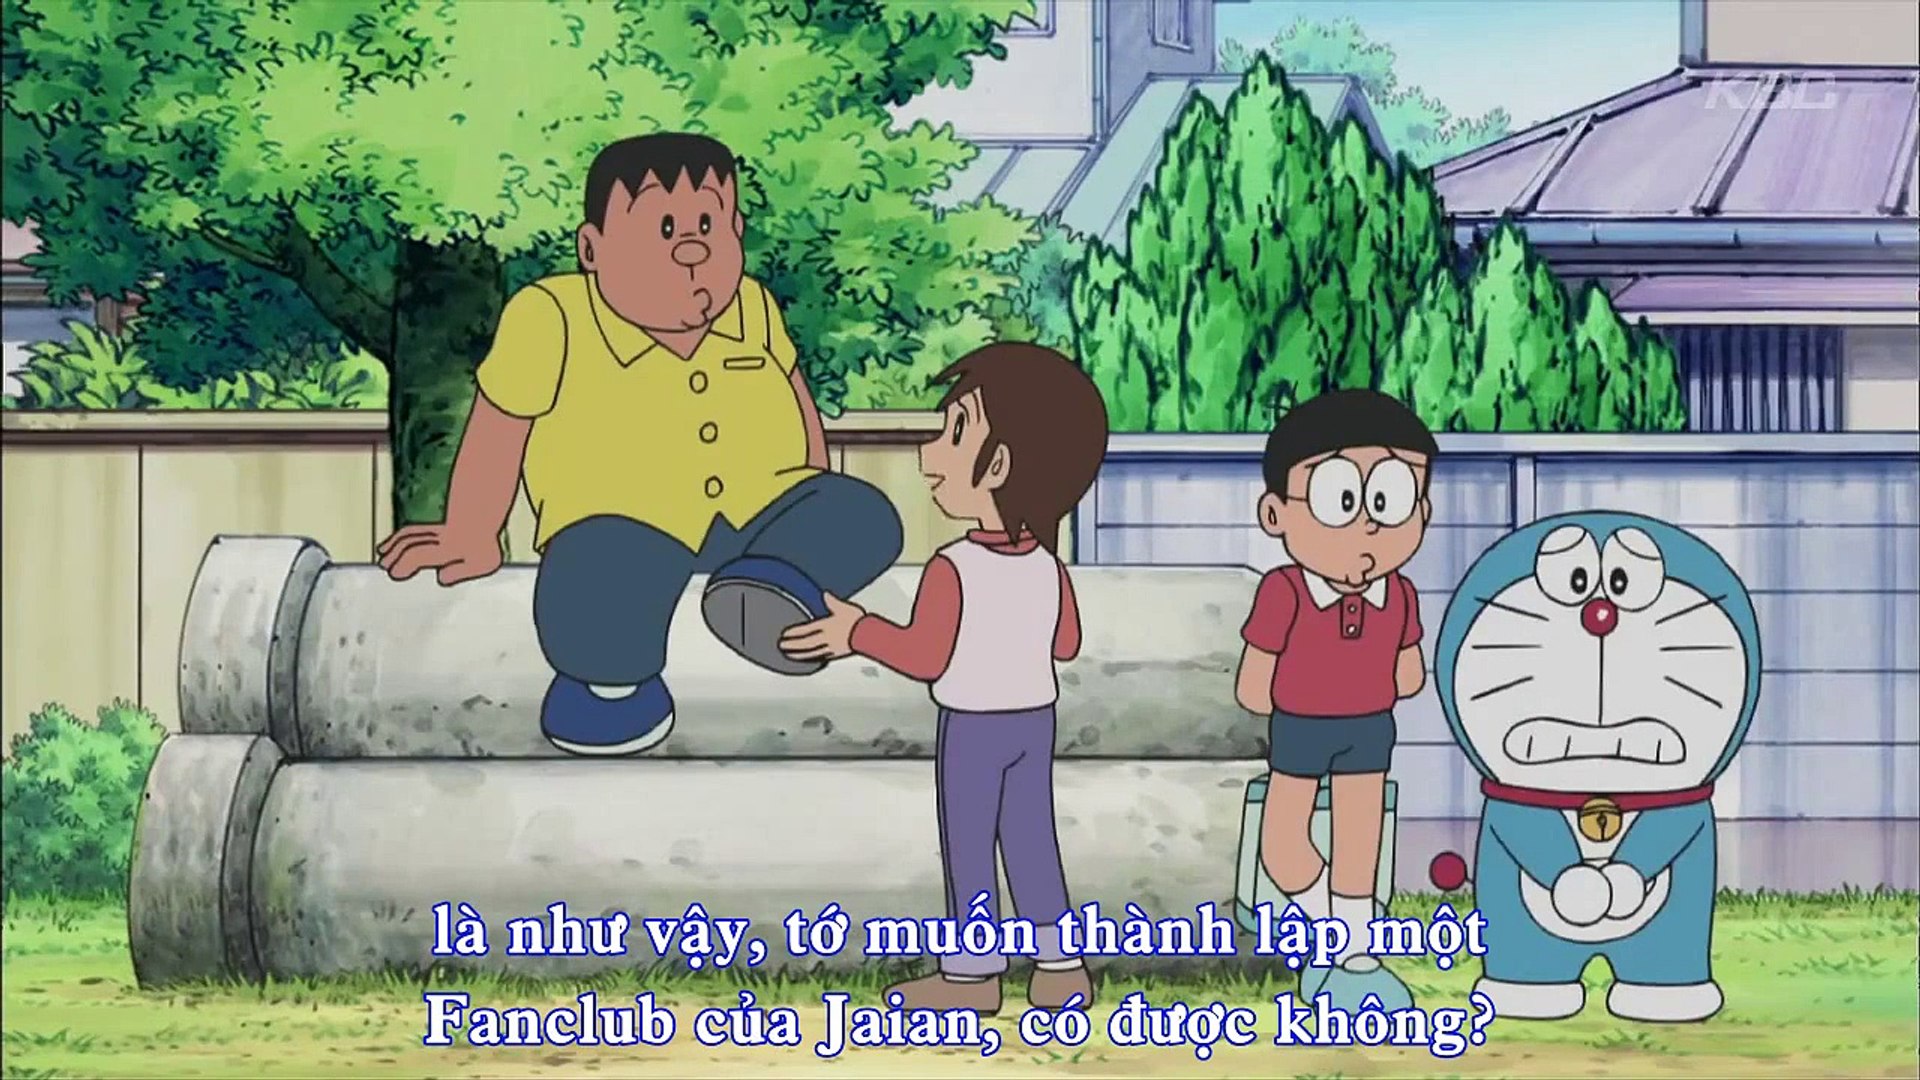 ドラえもん Doraemon Ep 254 新曲発表 ジャイアンにボエボエ Dailymotion Video